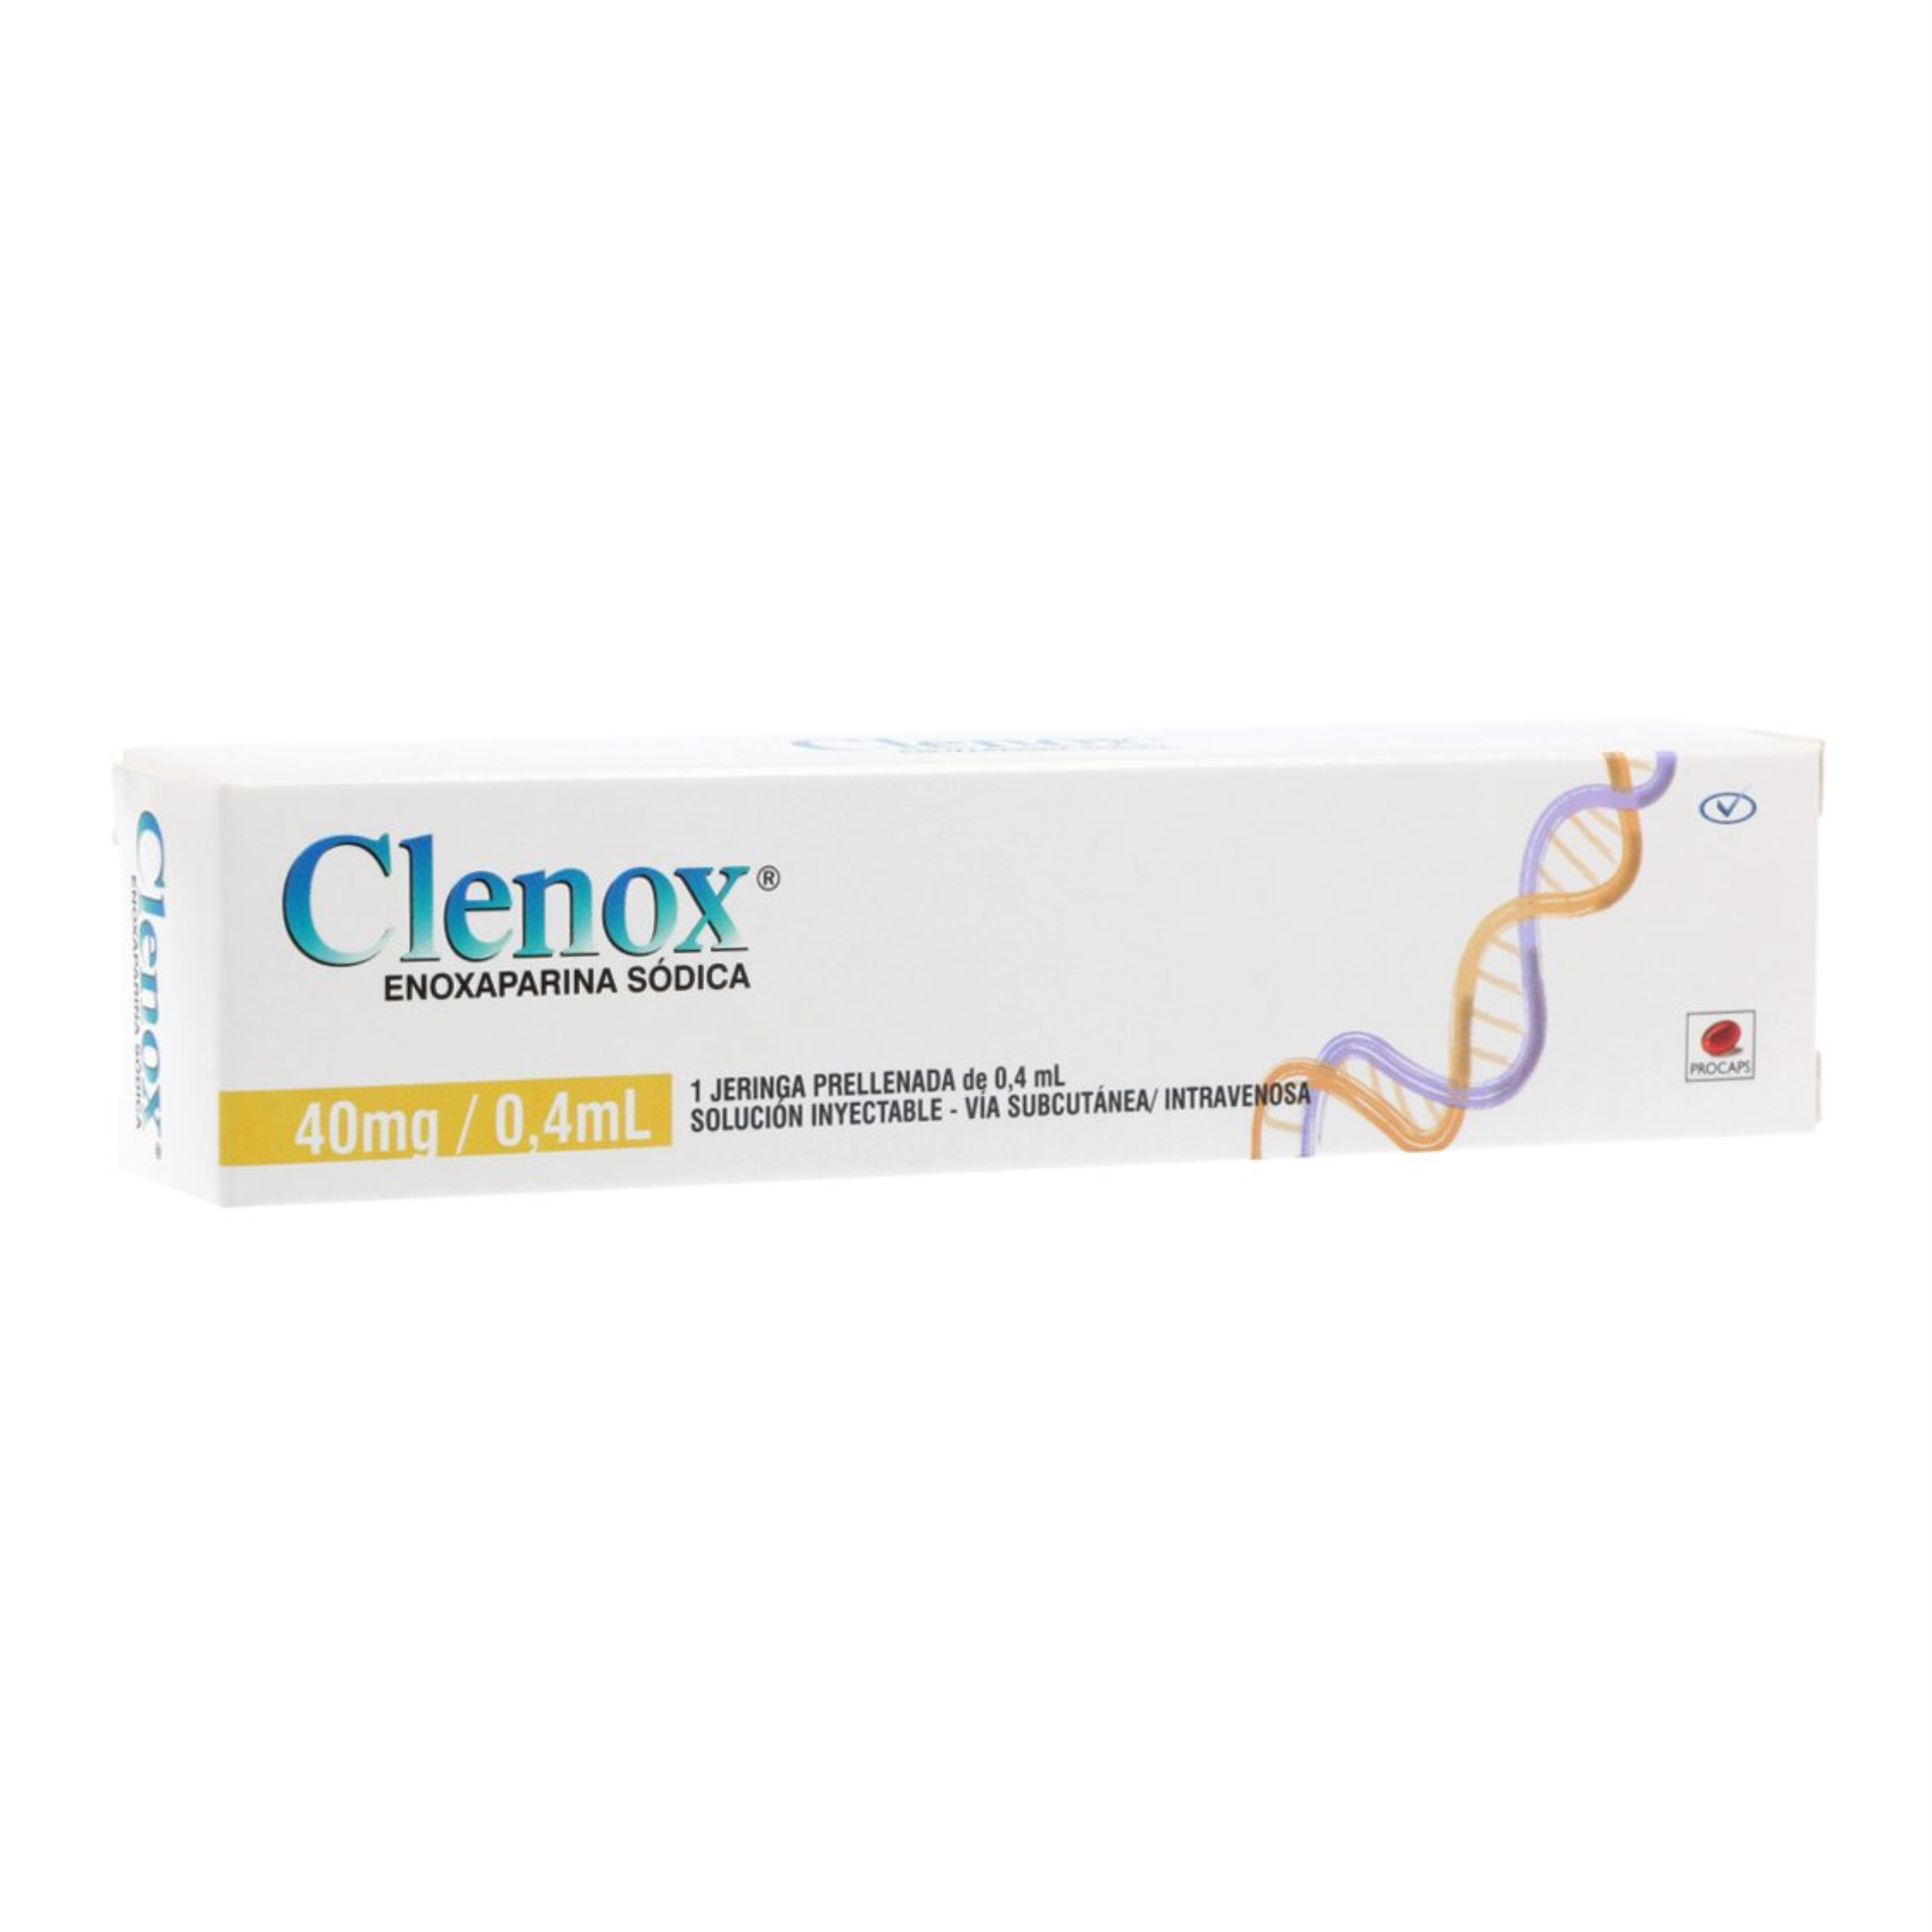 Clenox Jeringa Prellenada 40 mg / 0.4 mL